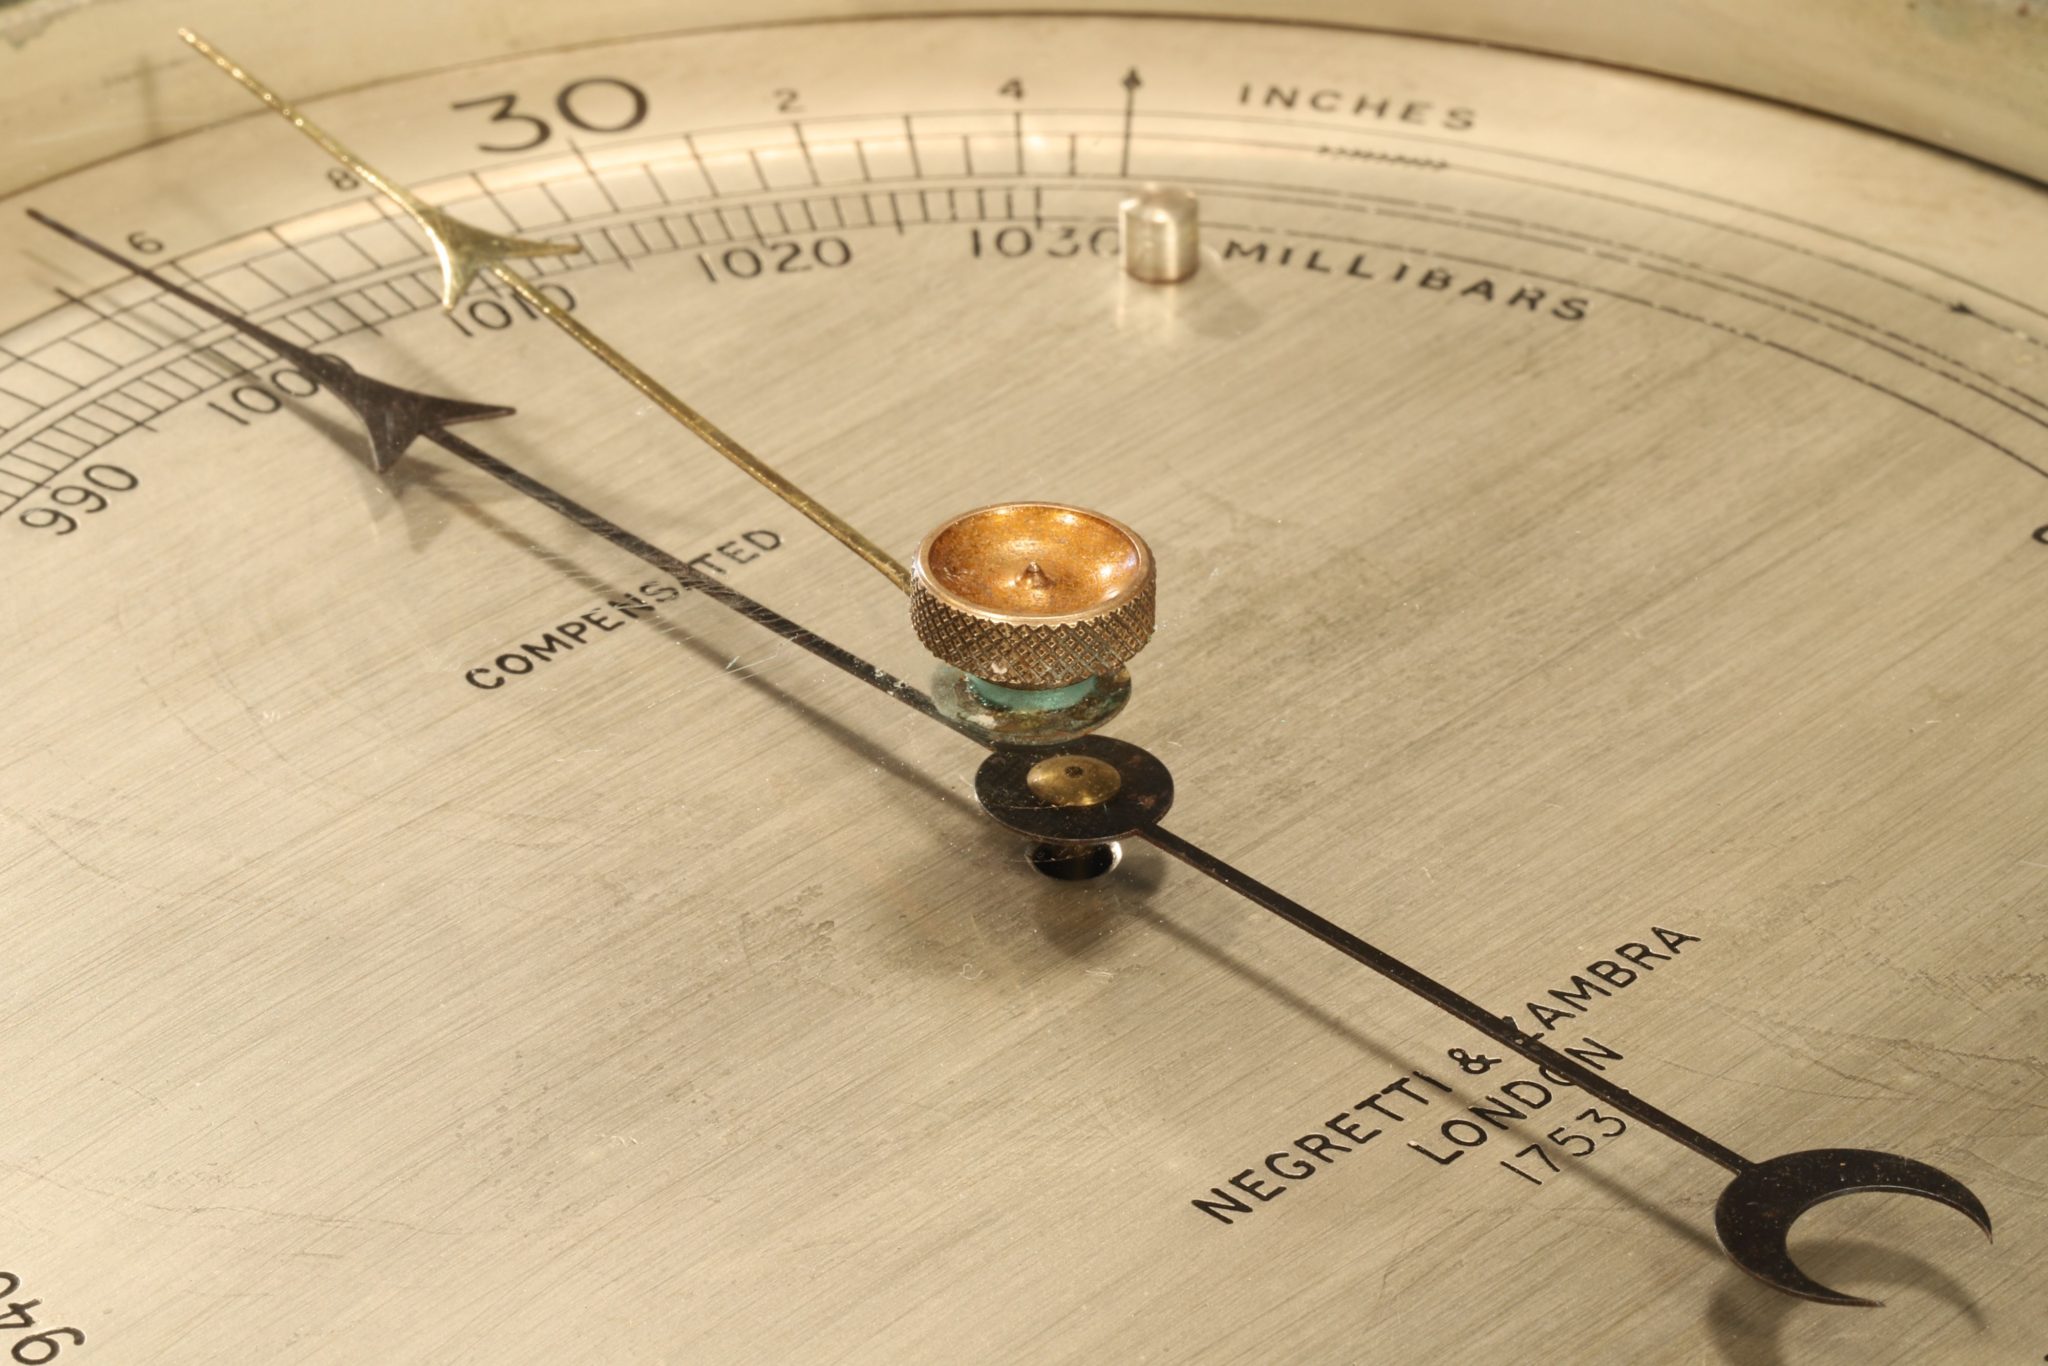 Image of Negretti & Zambra Submarine Barometer No 17537 c1940